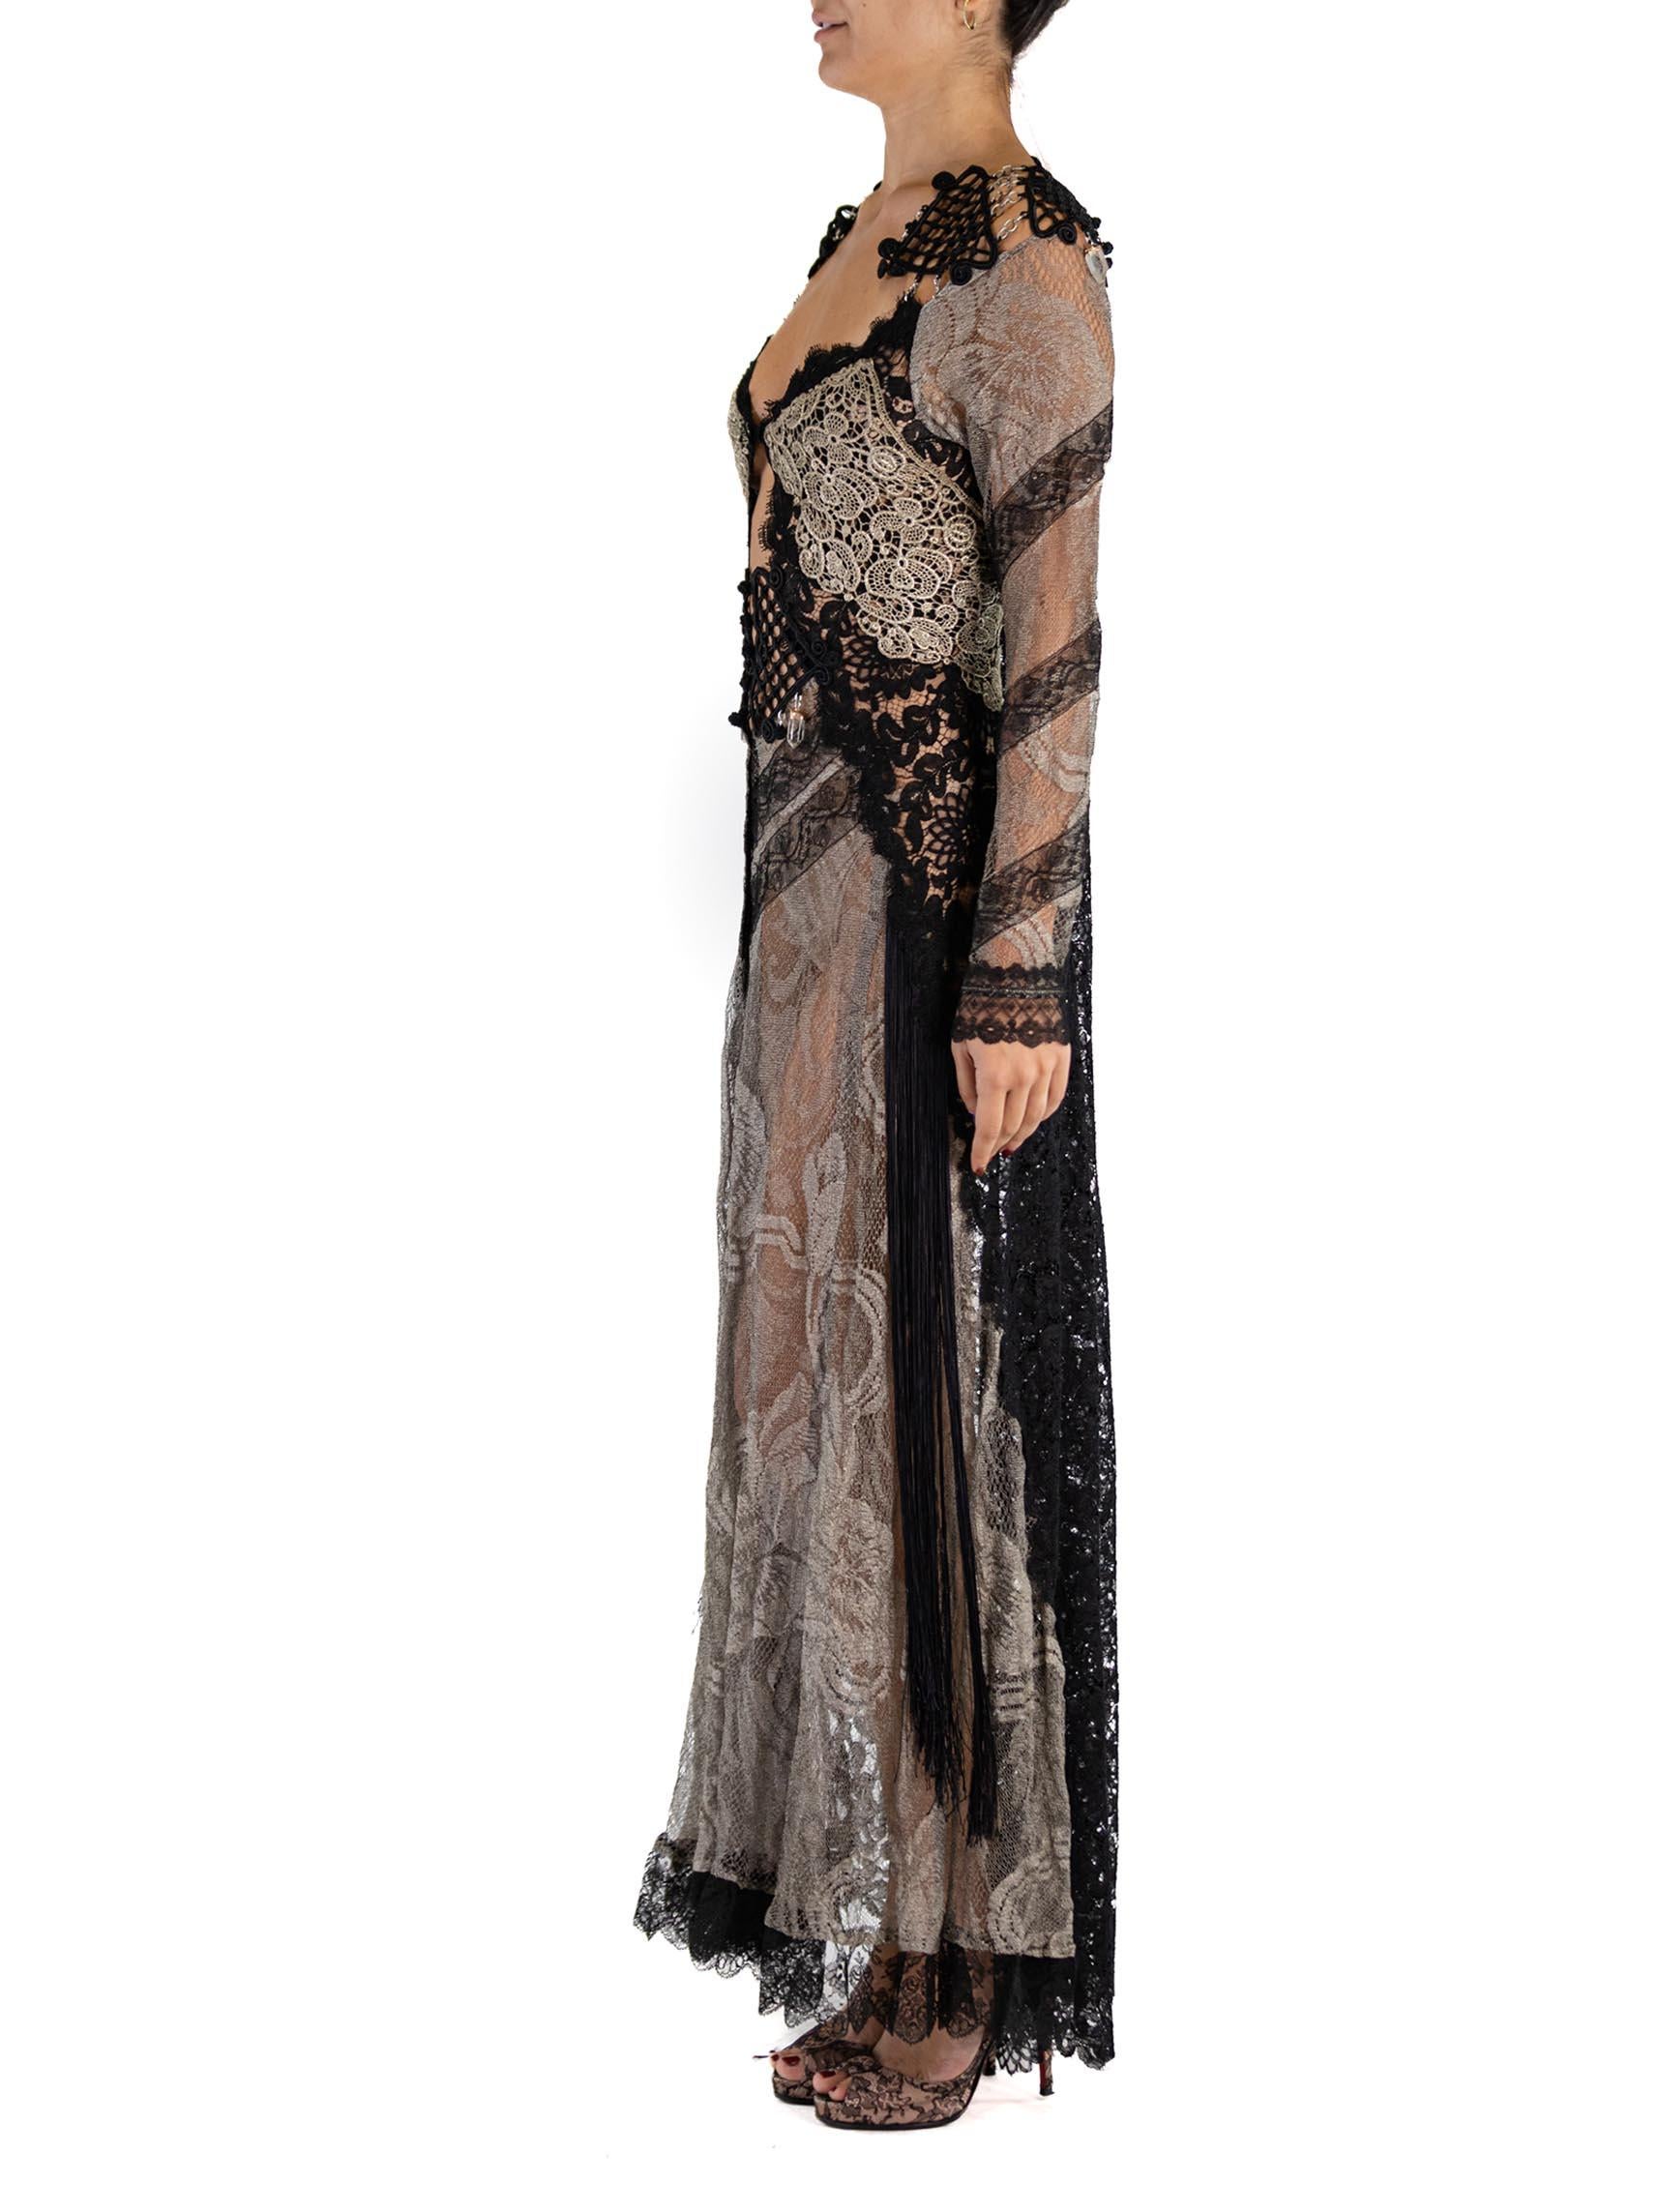 Cette robe est faite de dentelle métallique des années 1920 tissée avec de l'argent véritable. Avec des passementeries victoriennes faites à la main aux épaules, reliées entre elles par des maillons de chaîne et terminées par quelques cristaux de